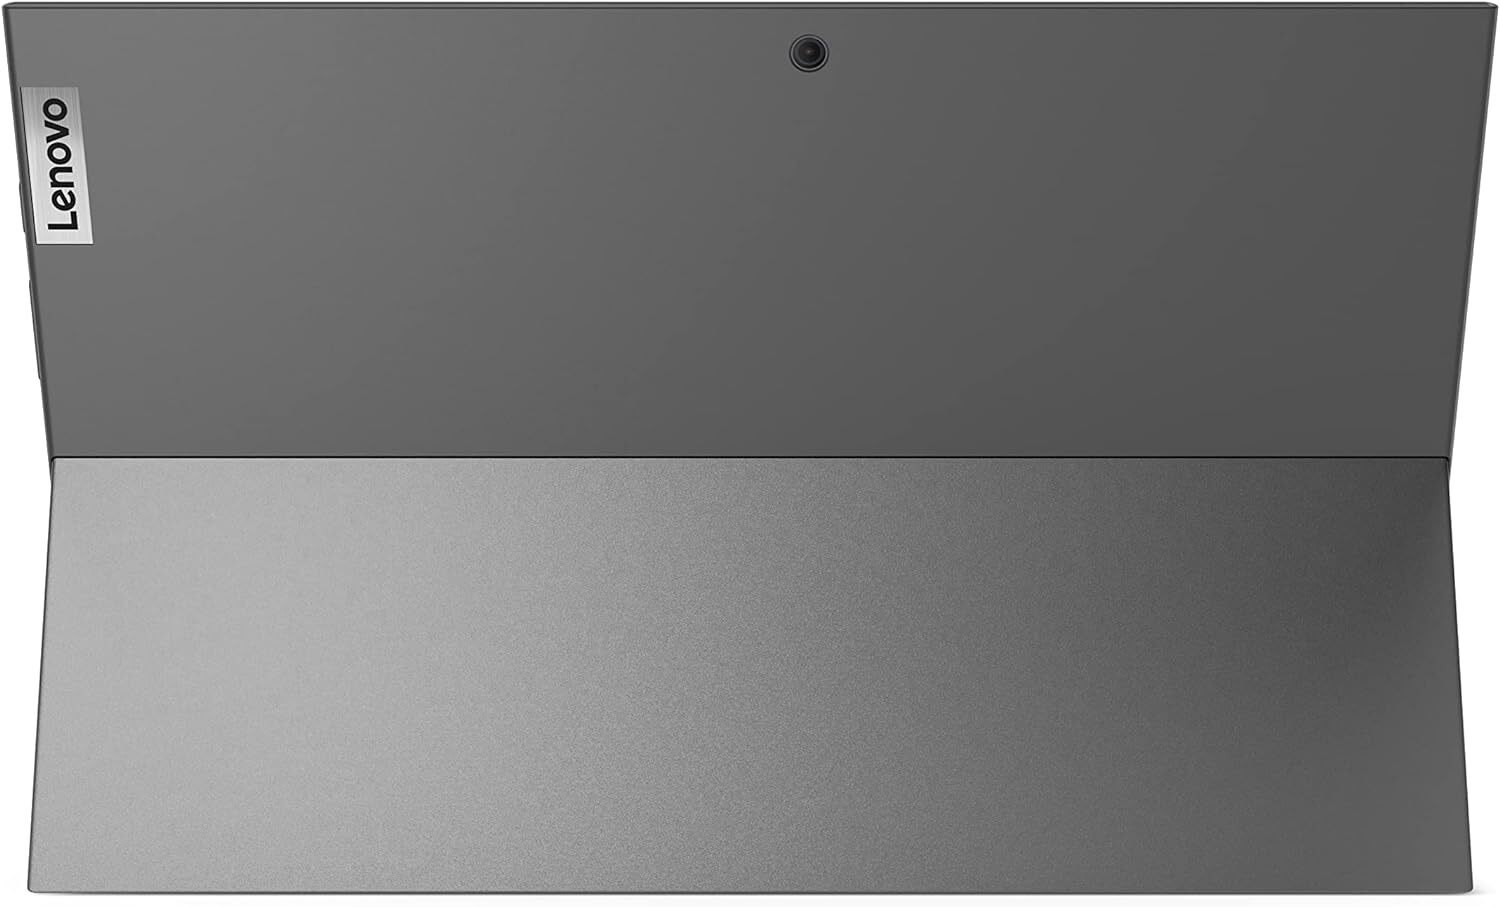  تبلت ویندوزی 10 اینچی Lenovo مدل ideapad Duet 3 10IGL5 | لاکچری لپ تاپ 